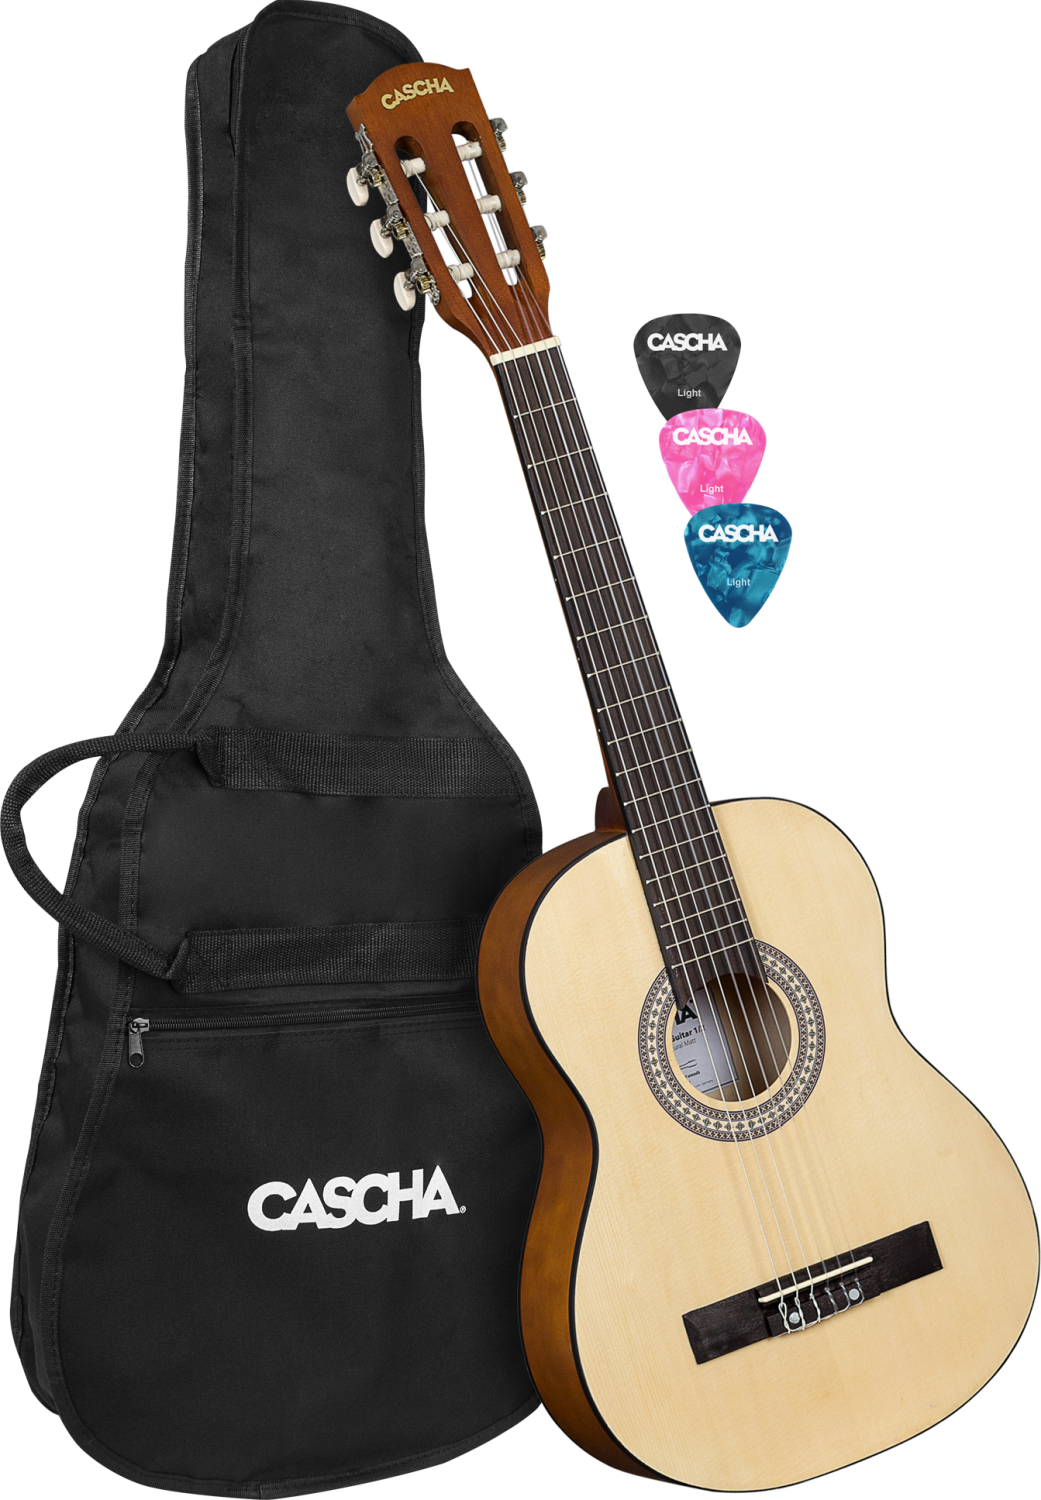 Guitare classique taile 1/2 pour enfant Cascha HH 2354 1/2 Natural